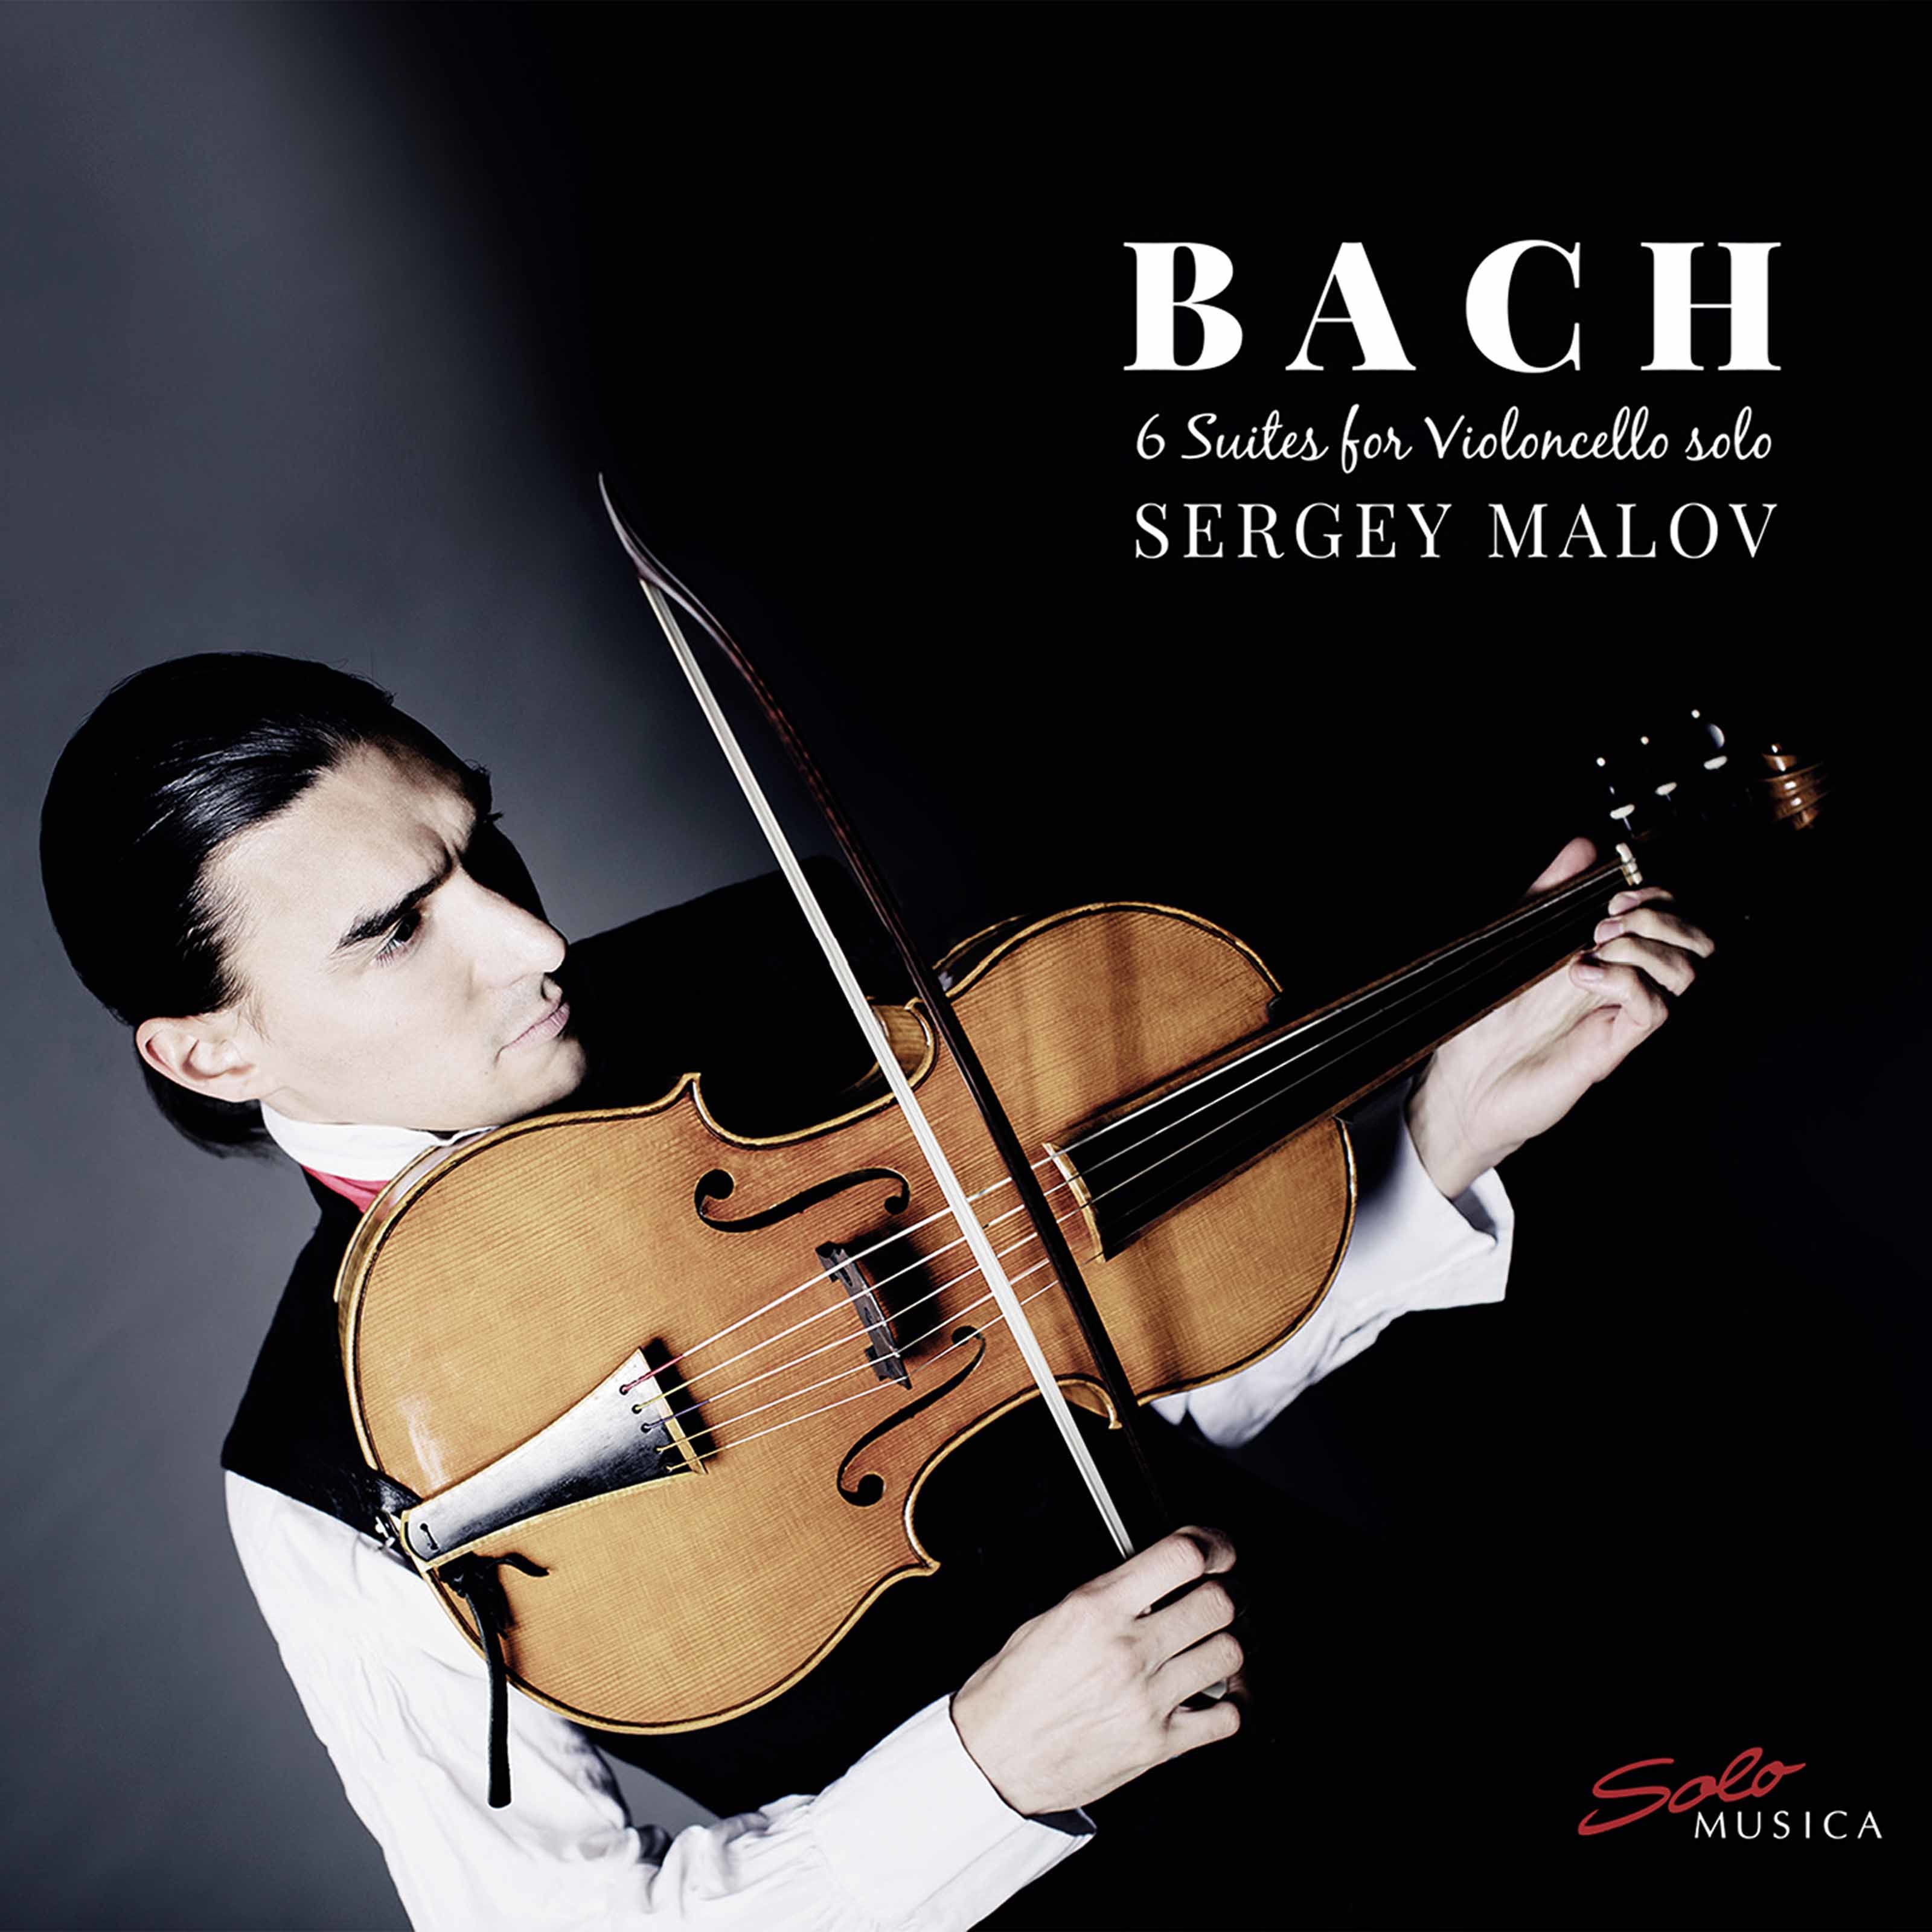 Sergey Malov - J.S. Bach - Six Suites for Violoncello Solo (2020) [FLAC 24bit/96kHz]